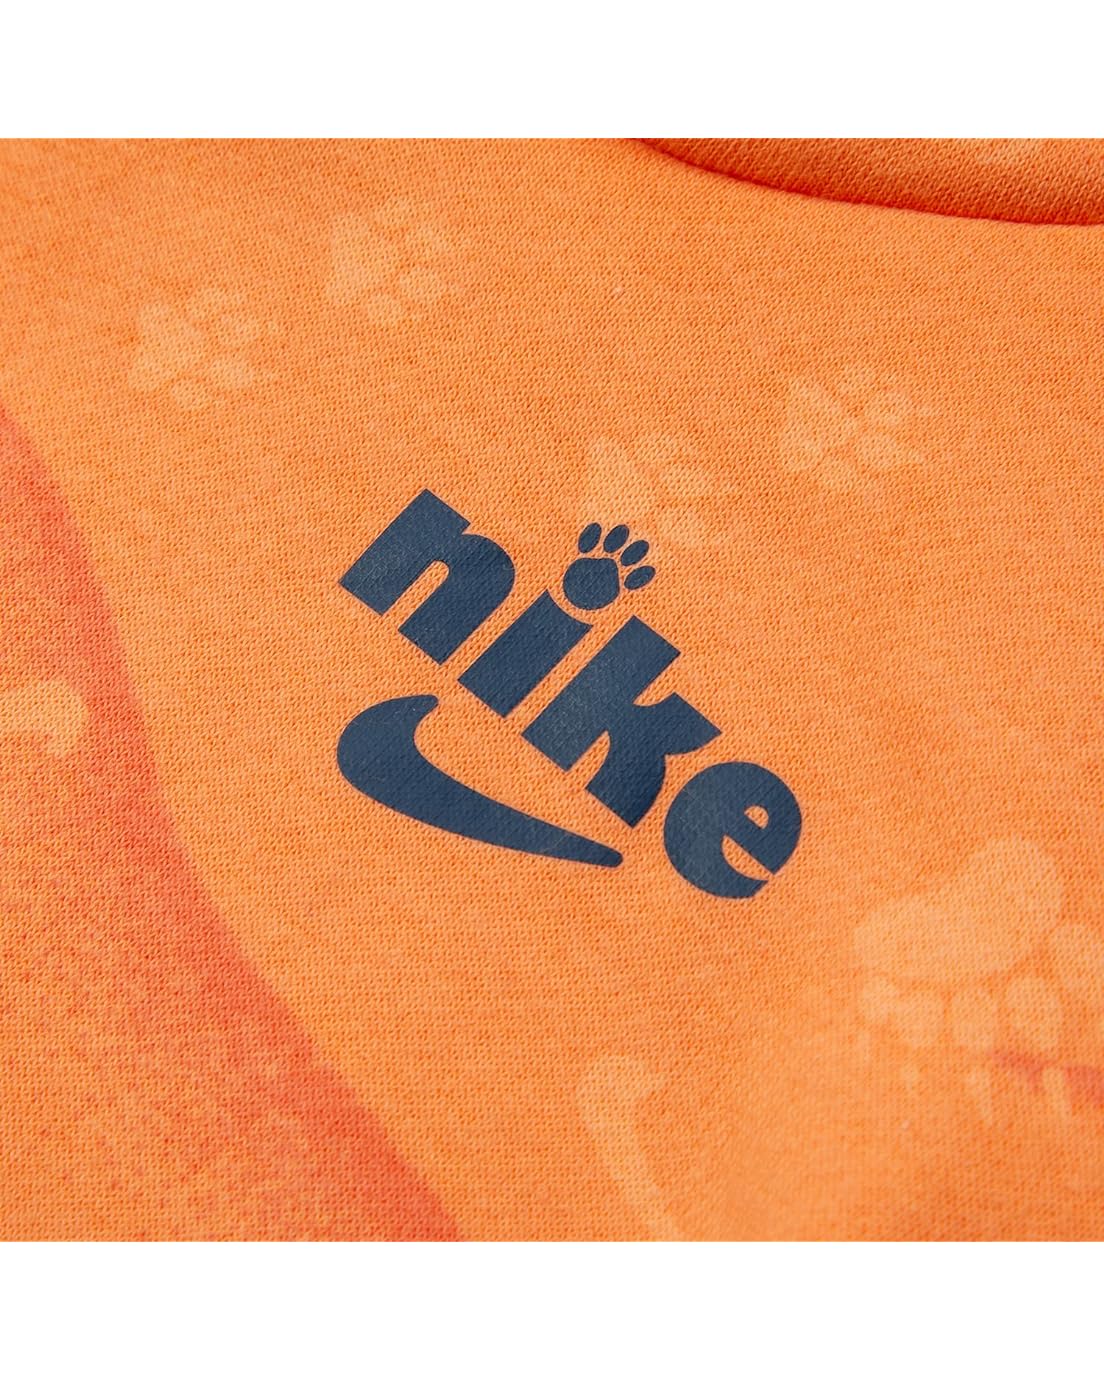 나이키 Nike Kids Track Pack Fleece Pullover Set (Infant)